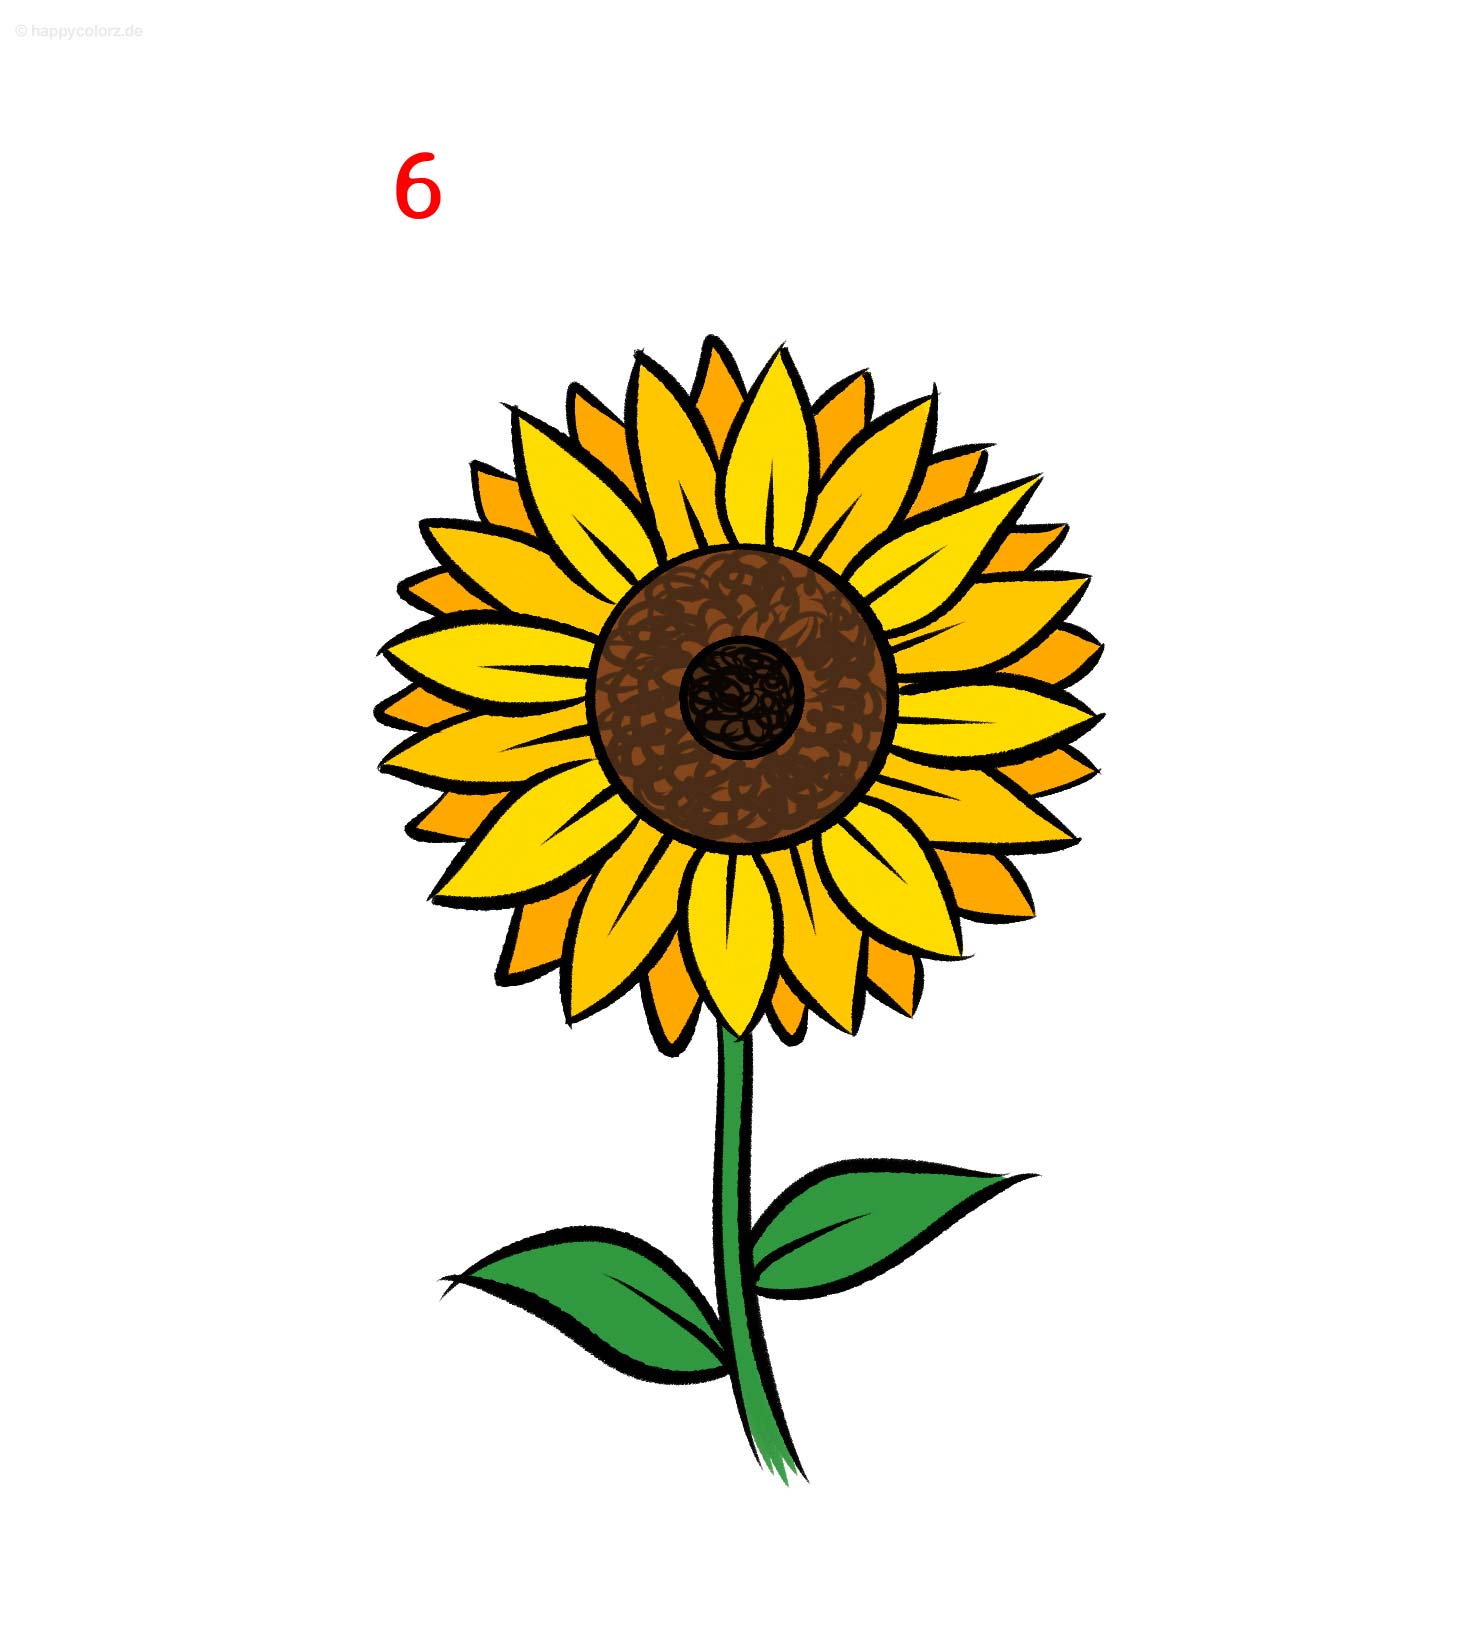 Sonnenblume malen - Schritt für Schritt